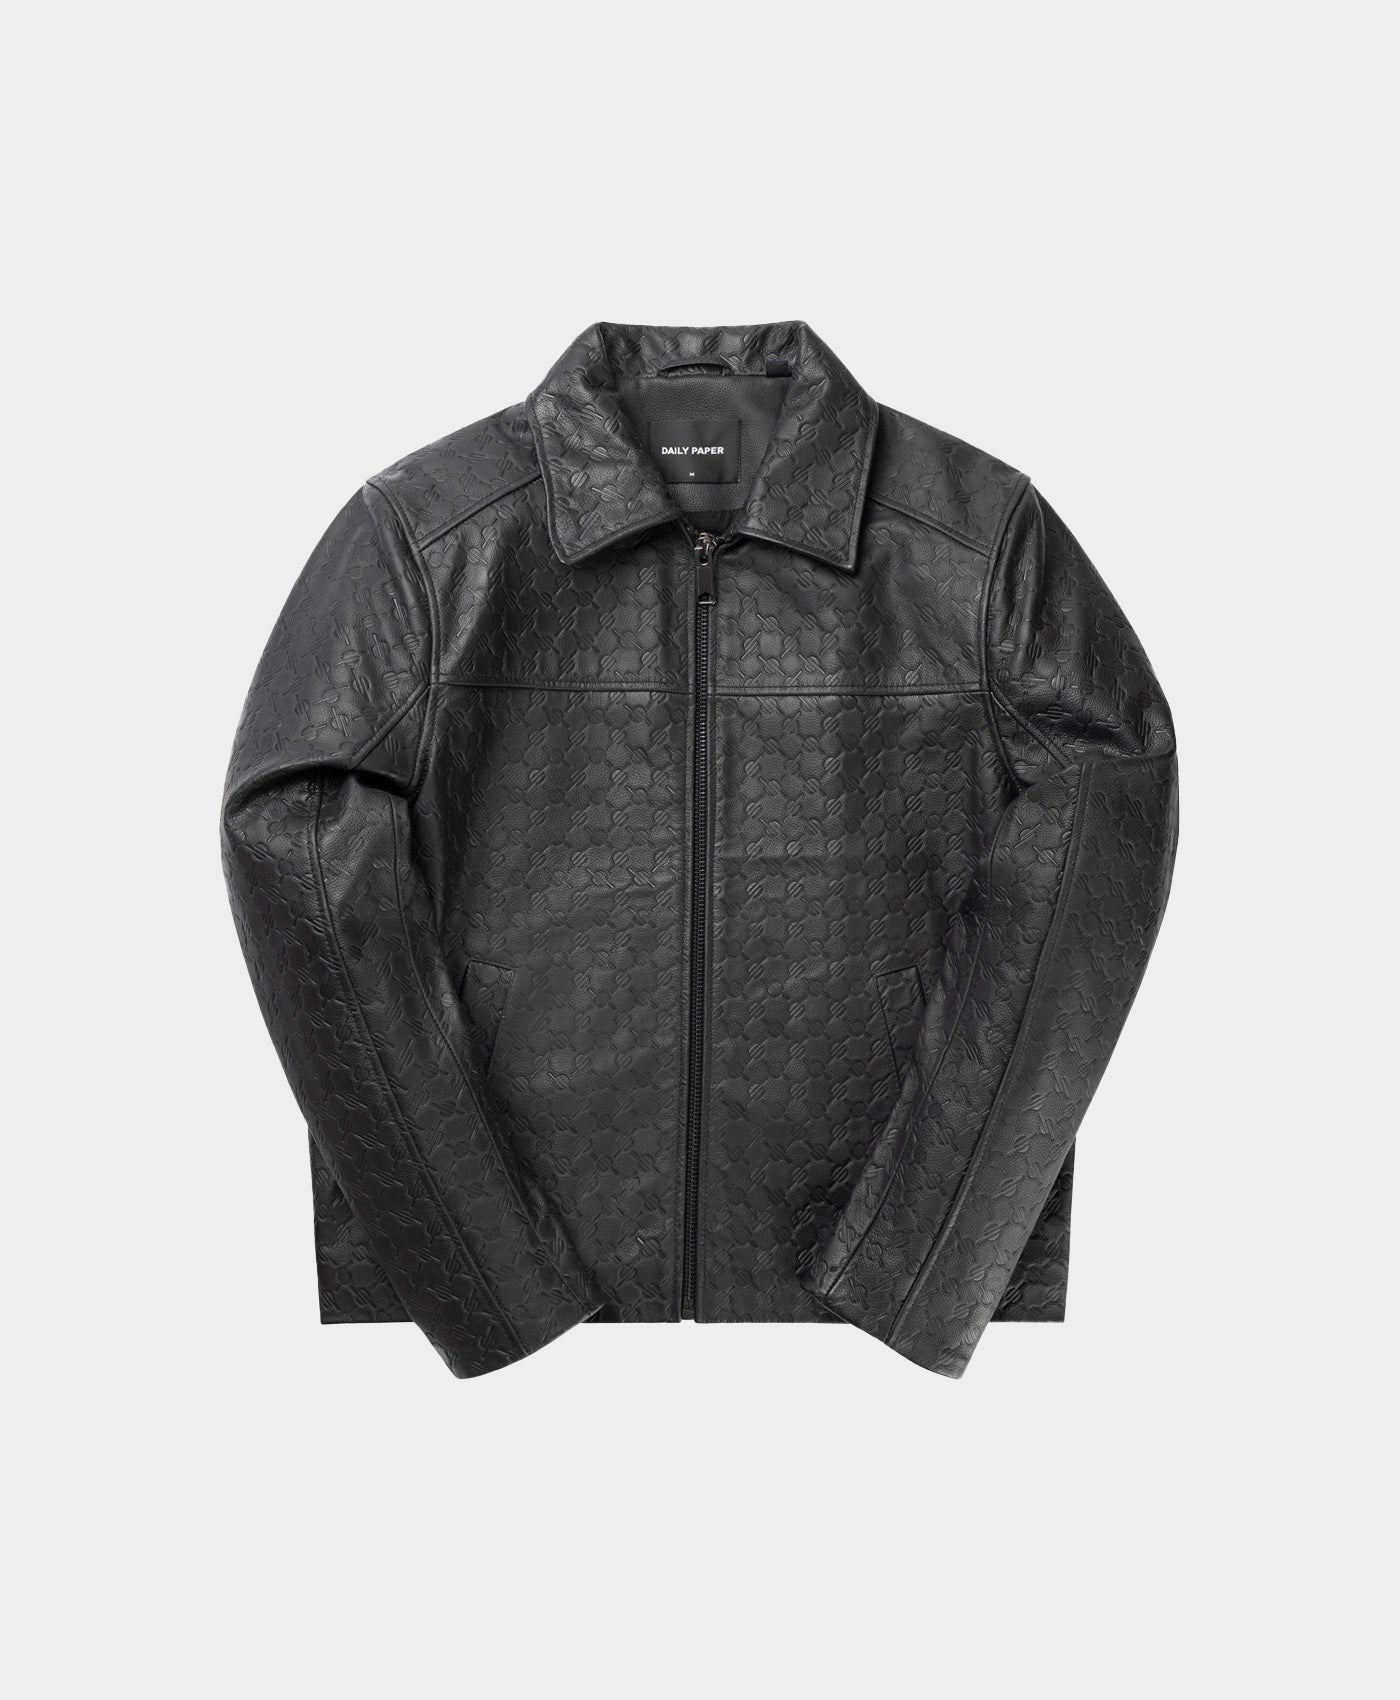 DP - Black Silence Monogram Leather Jacket - Packshot - Front